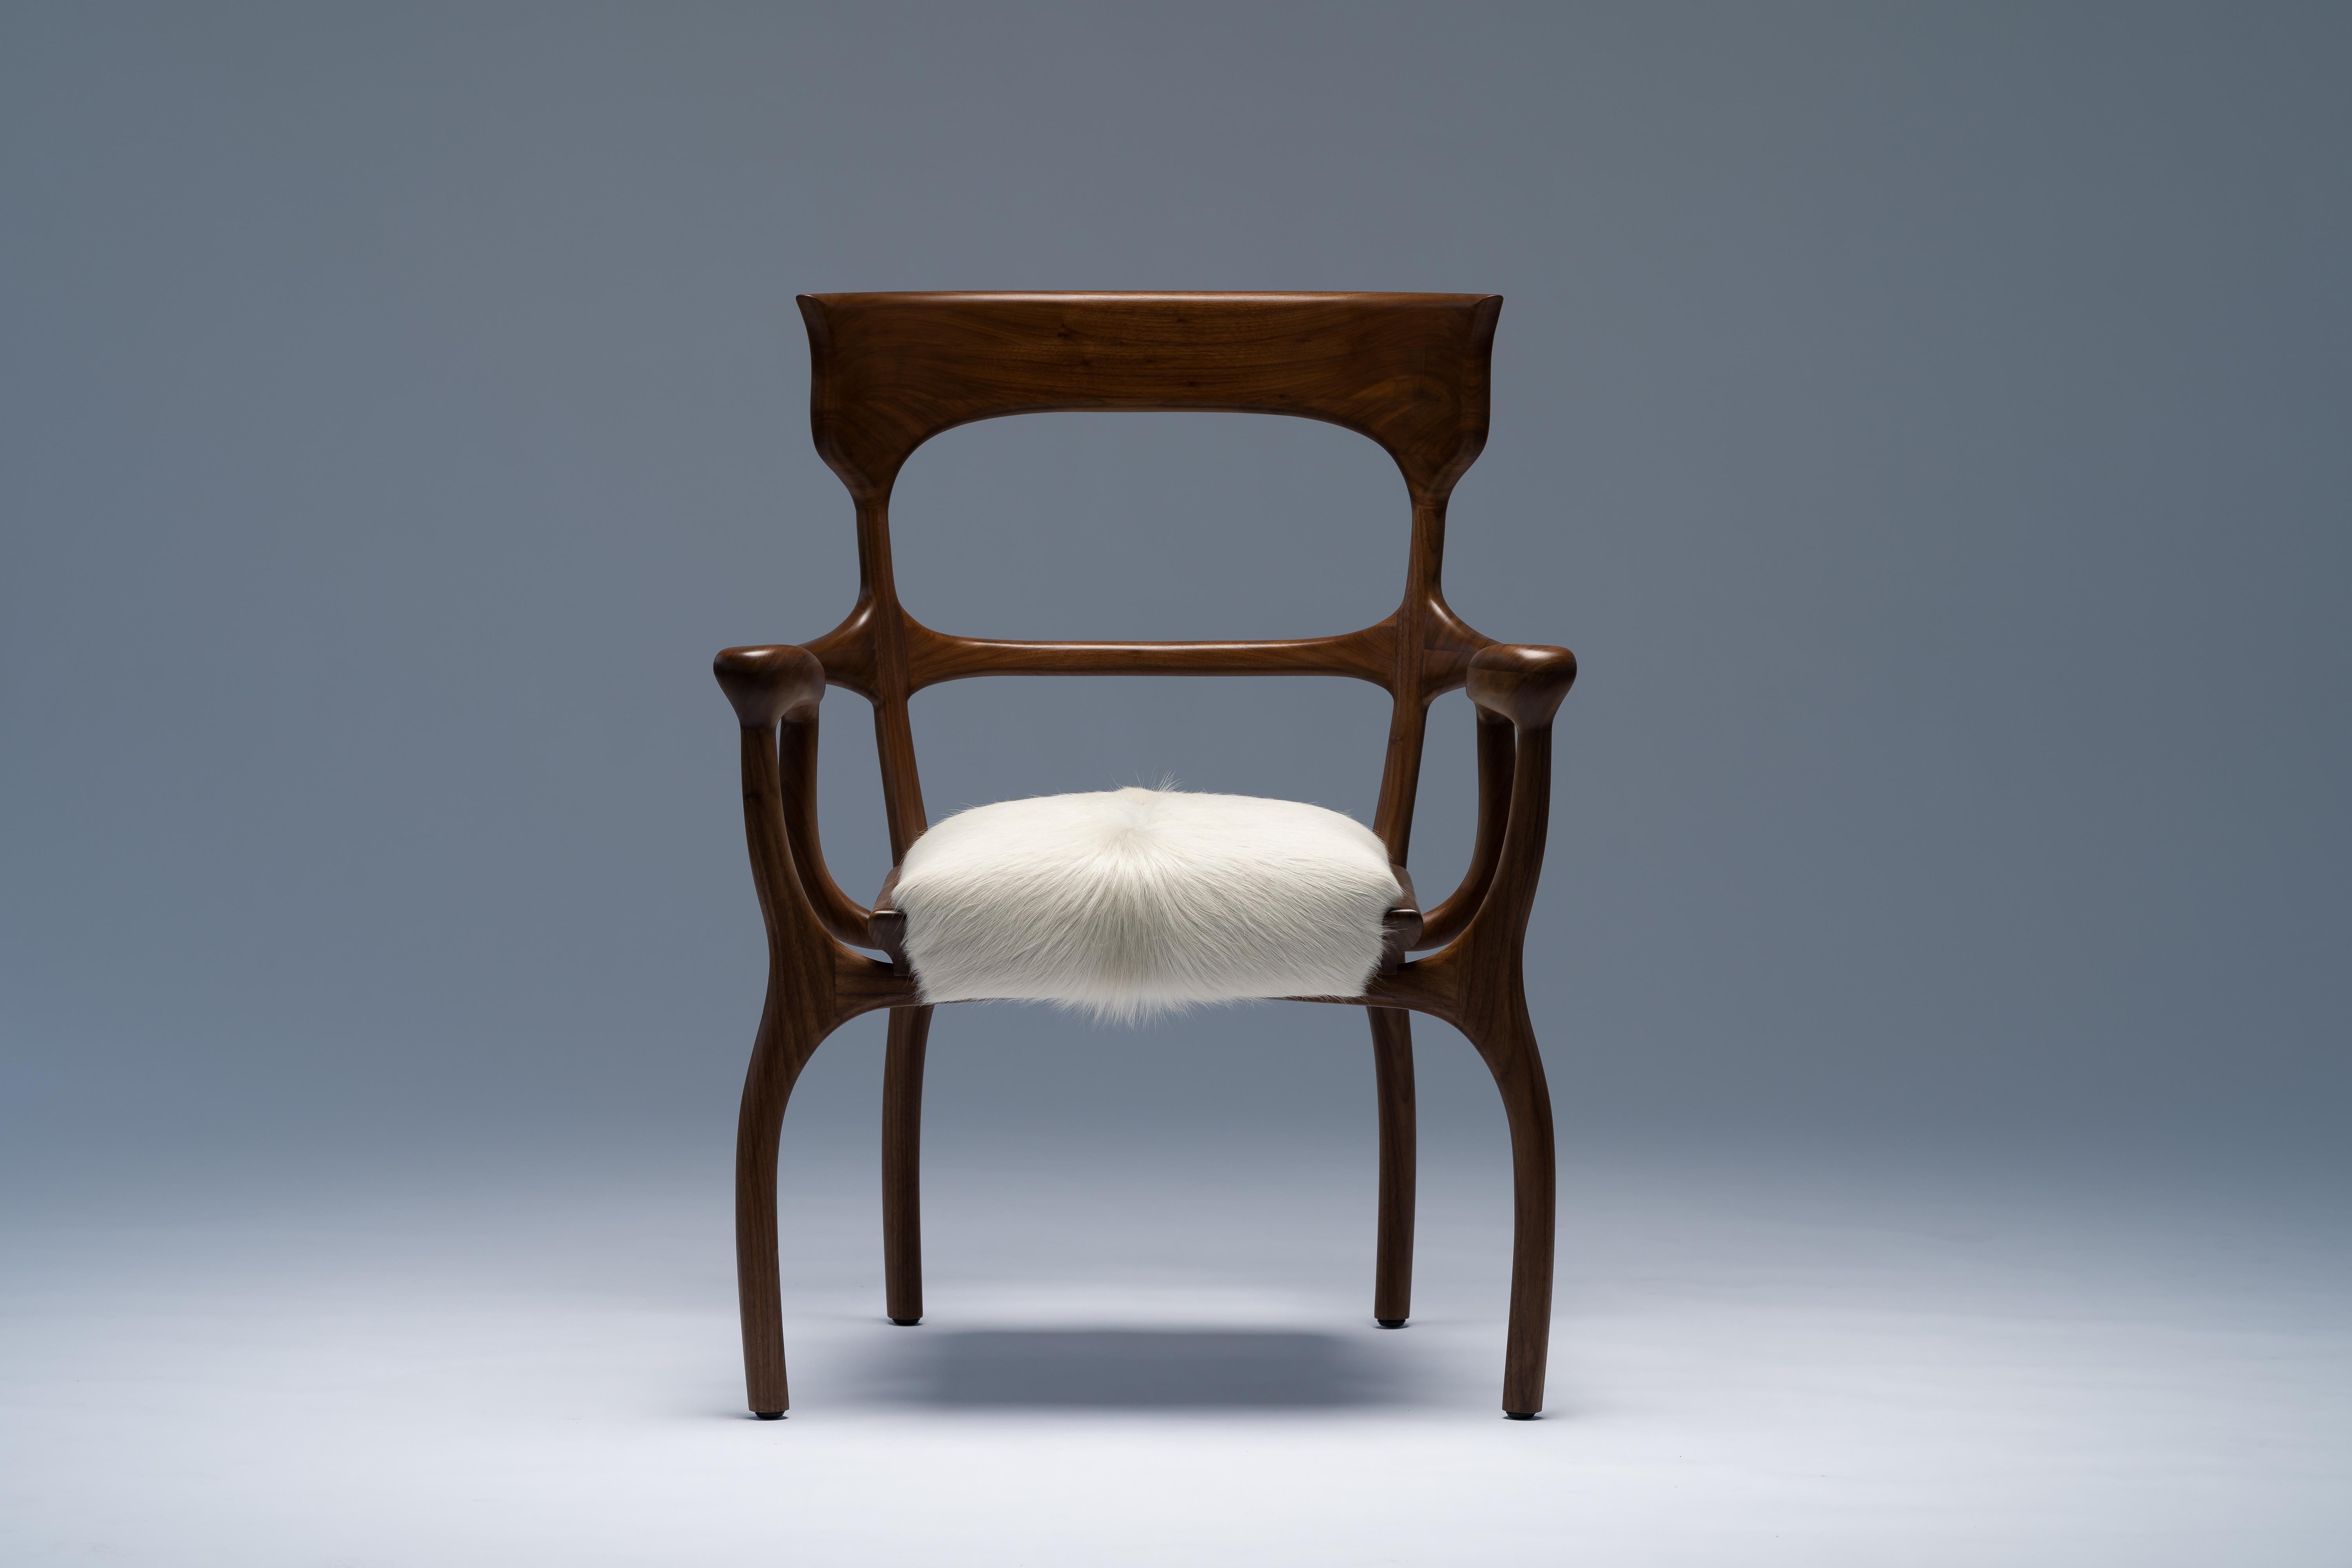 Fauteuil MARTA de Mandy Graham 

MARTA
M01, chaise fauteuil
Noyer américain ou chêne blanc sablé, siège en vachette velue
Mesures : 27